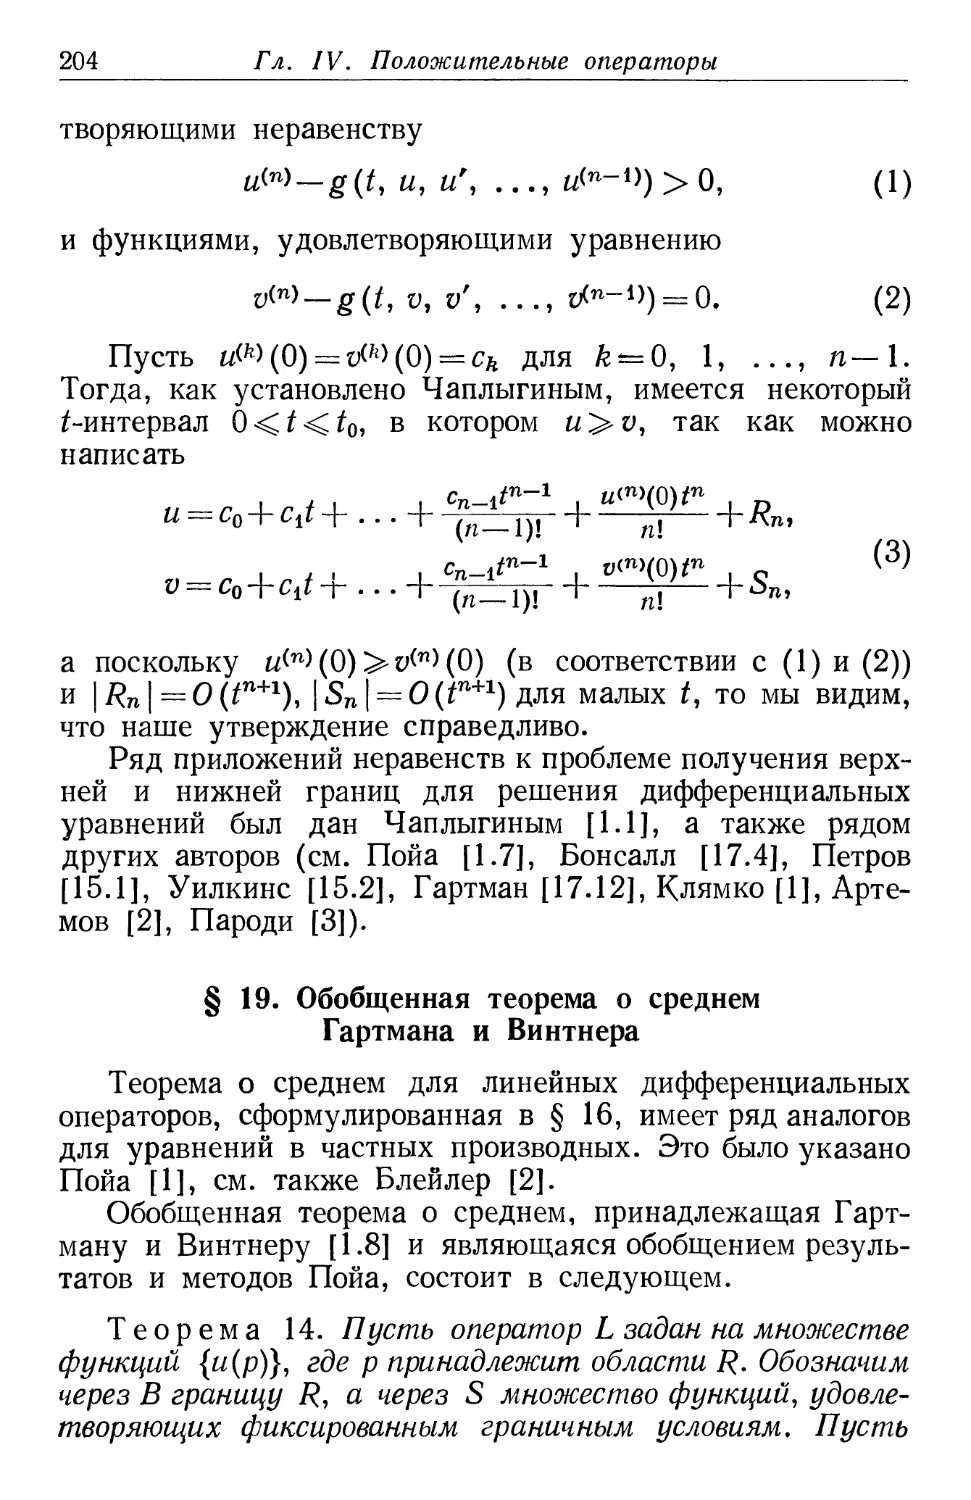 § 19. Обобщенная теорема о среднем Гартмана и Винтнера